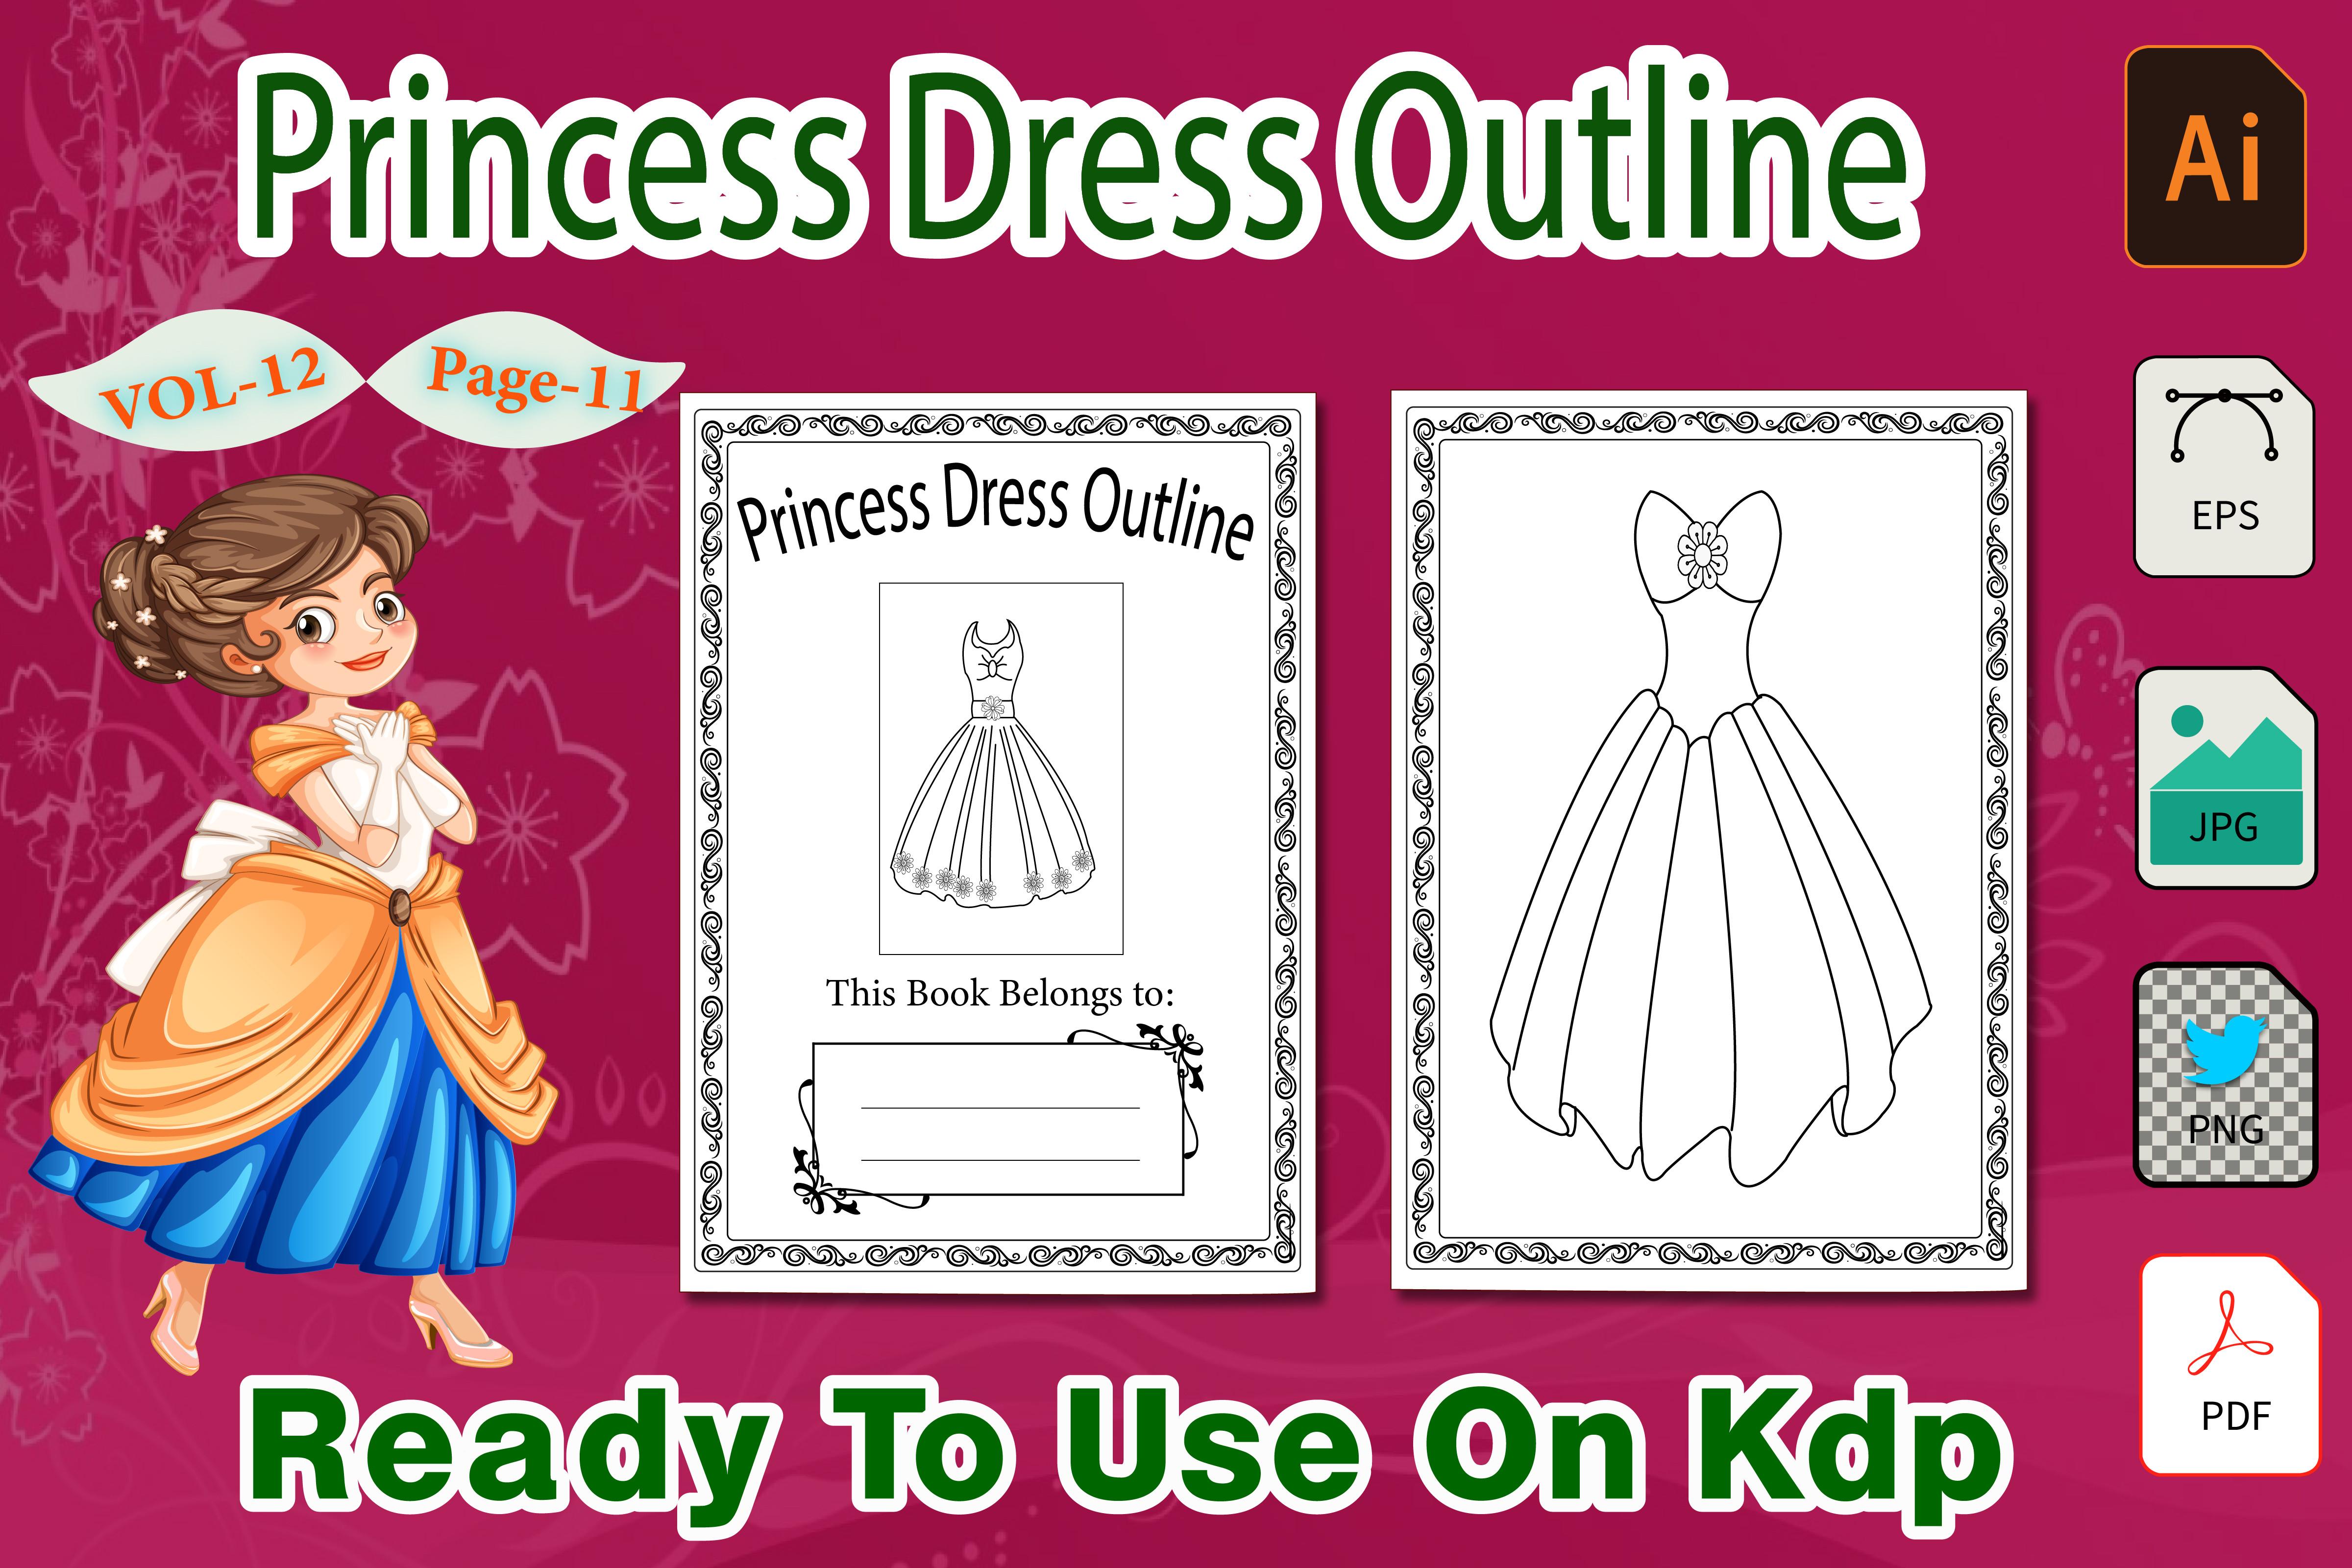 Barbie Princess Dress Outline Vol-12